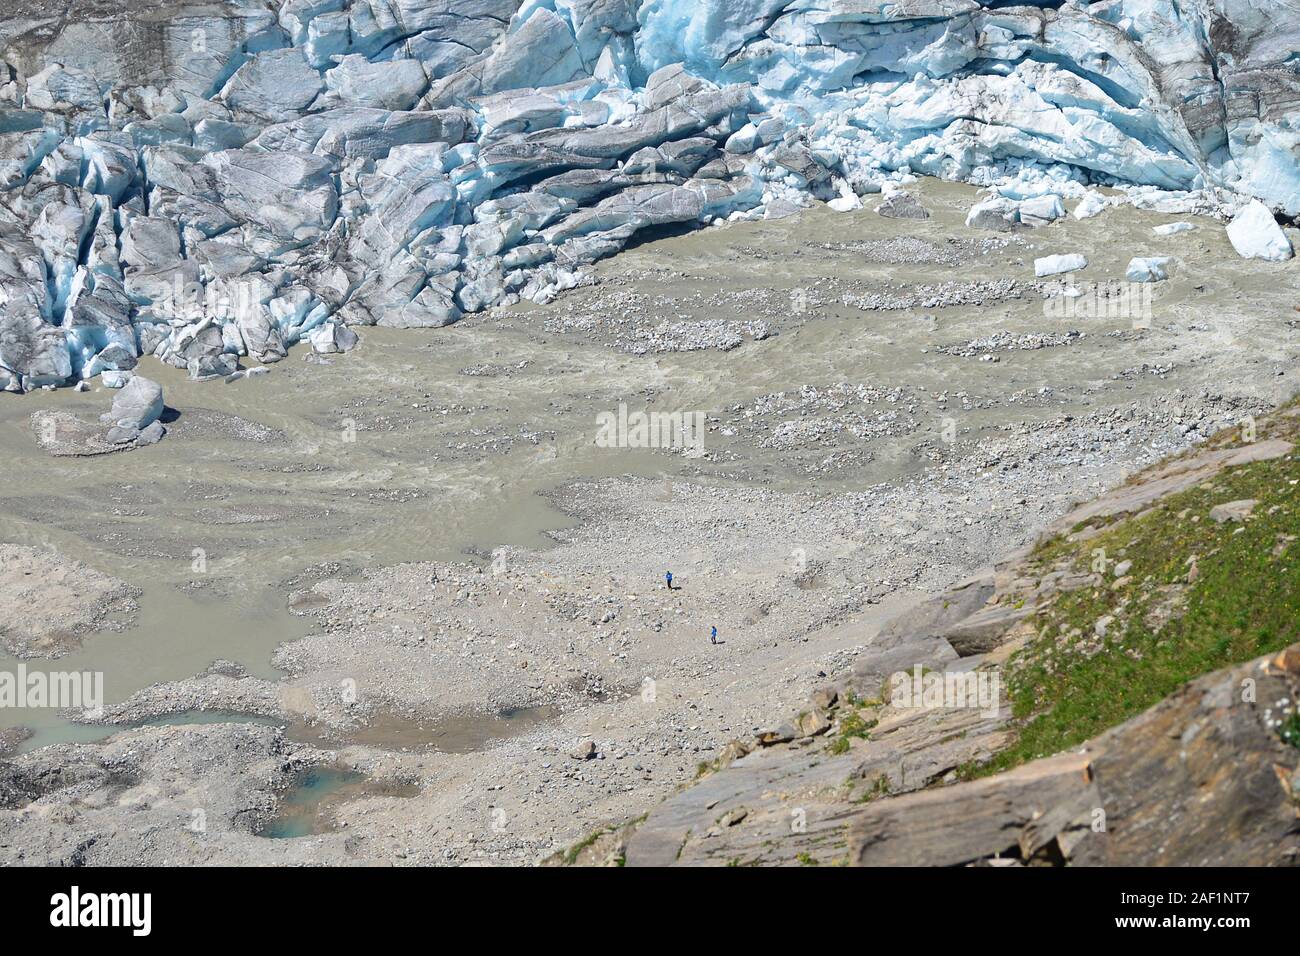 Luftaufnahme von Menschen zu Fuß auf der Pasterze Glacier zwischen Schmelzen wasser Seen und Eis. Stockfoto